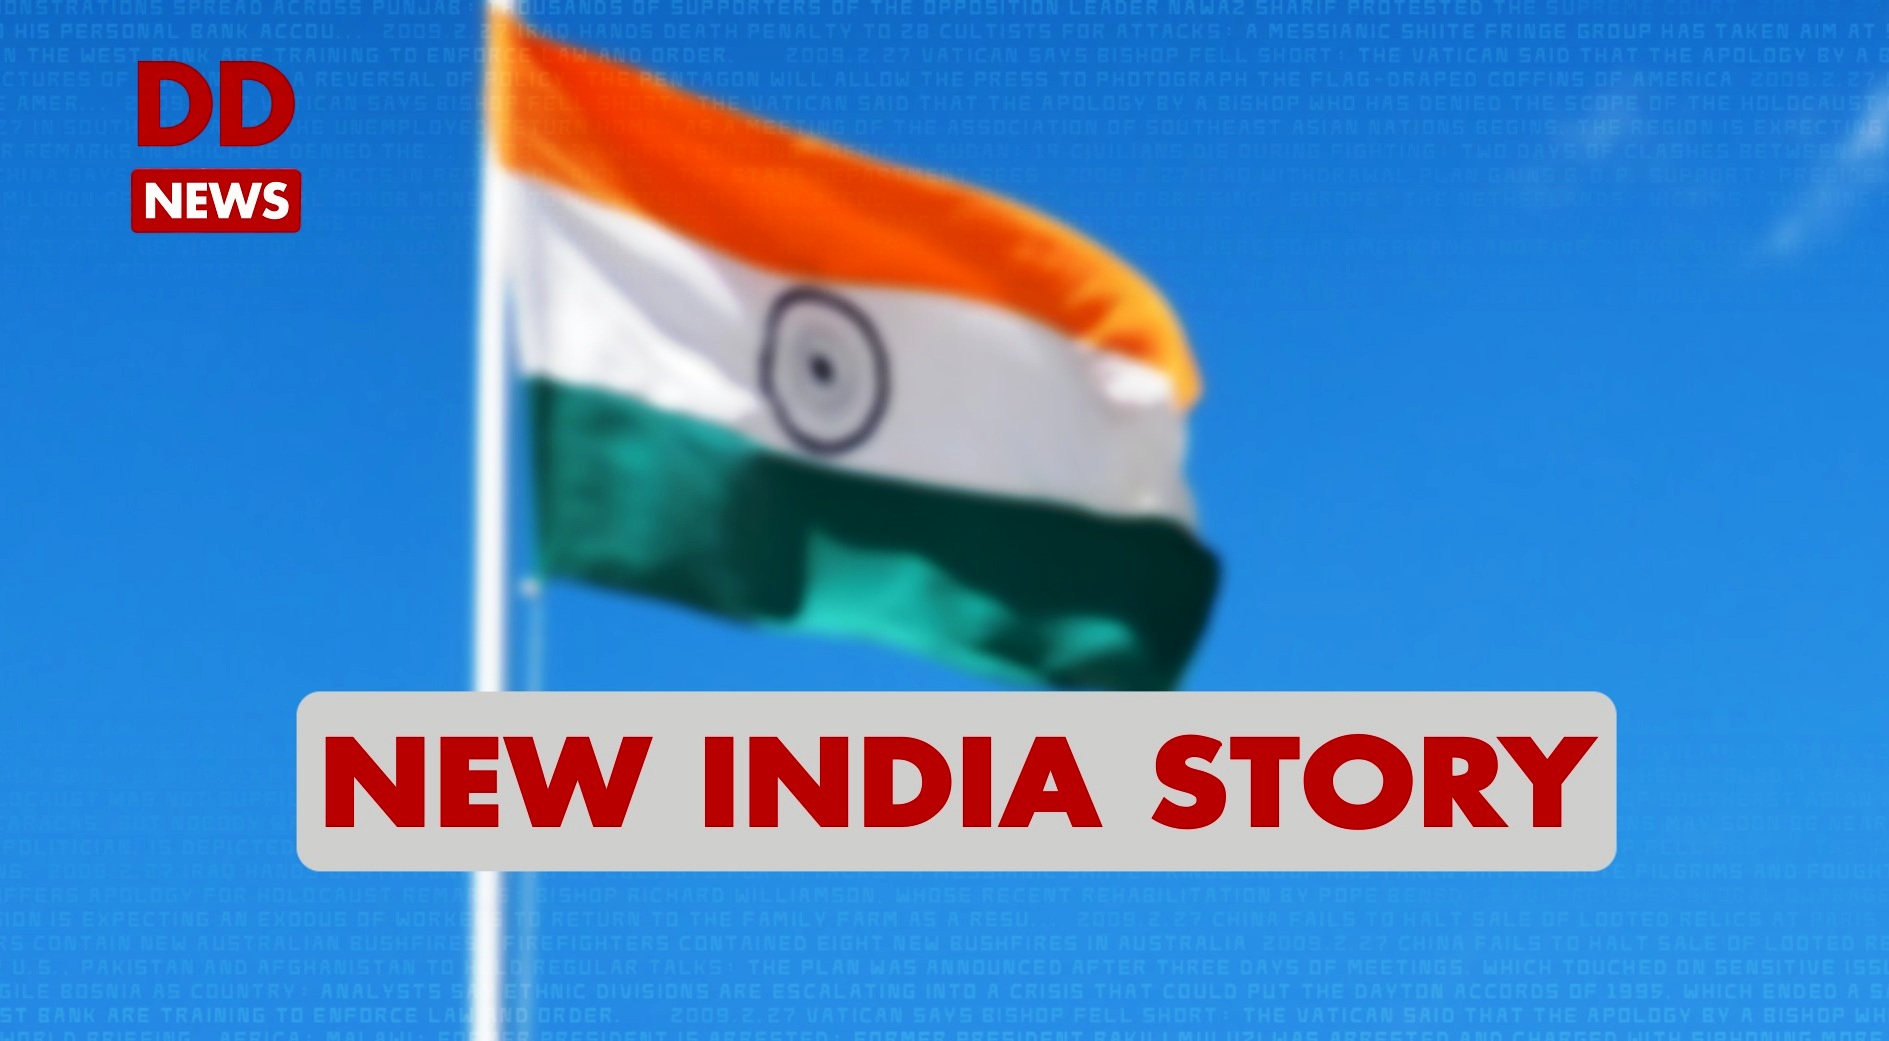 New India Story / Telangana / Bhadradri Kothagudem / Pradhan Mantri Gramin Sadak Yojna